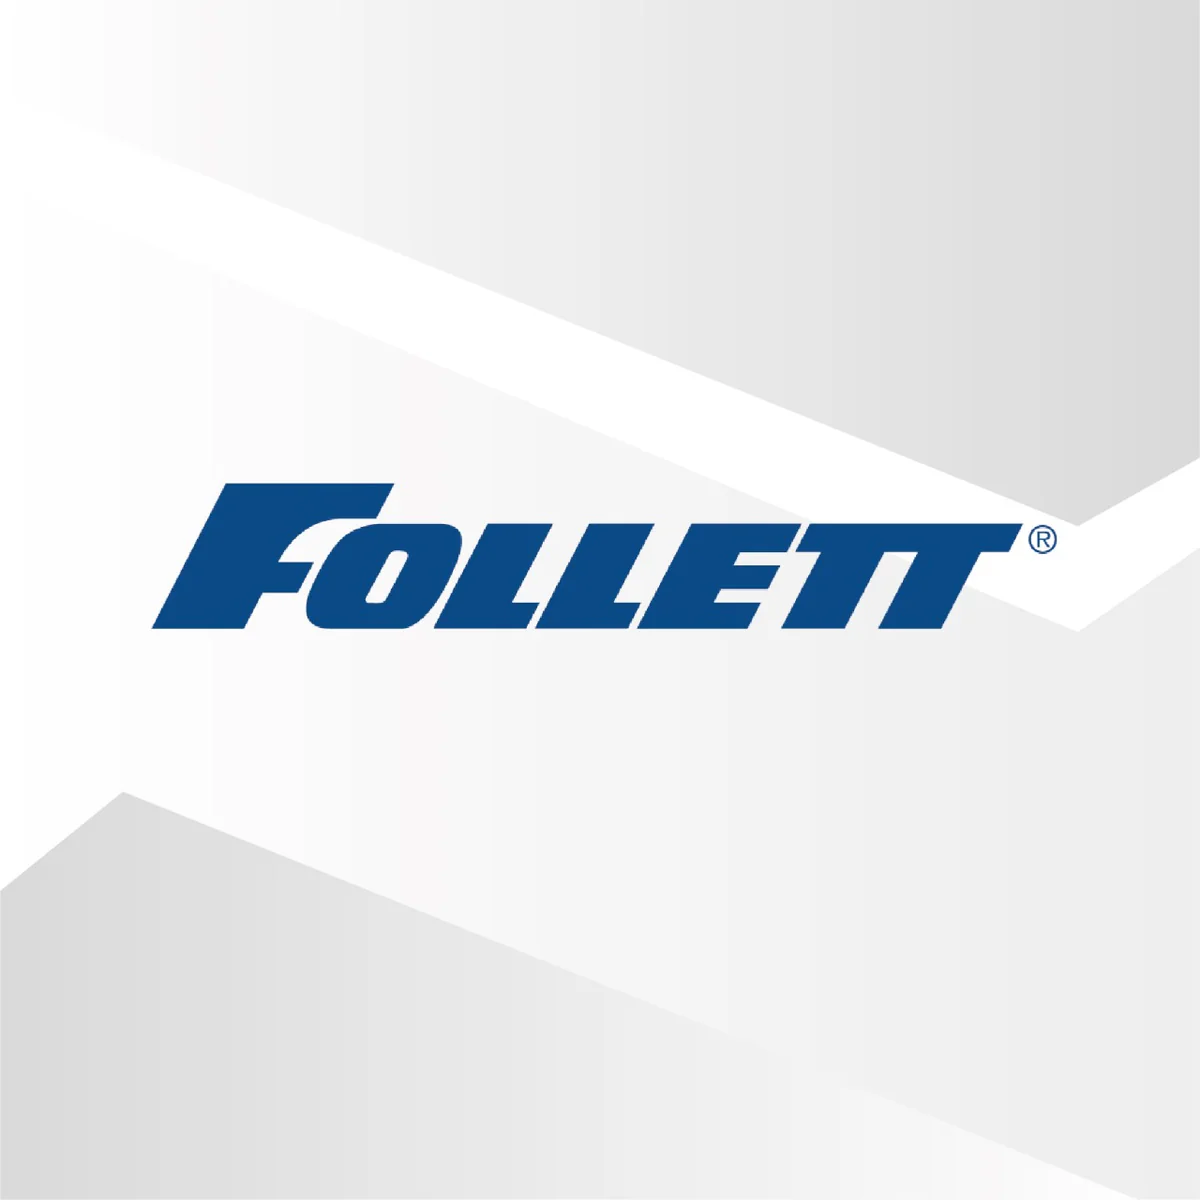 FOLLETT, LLC